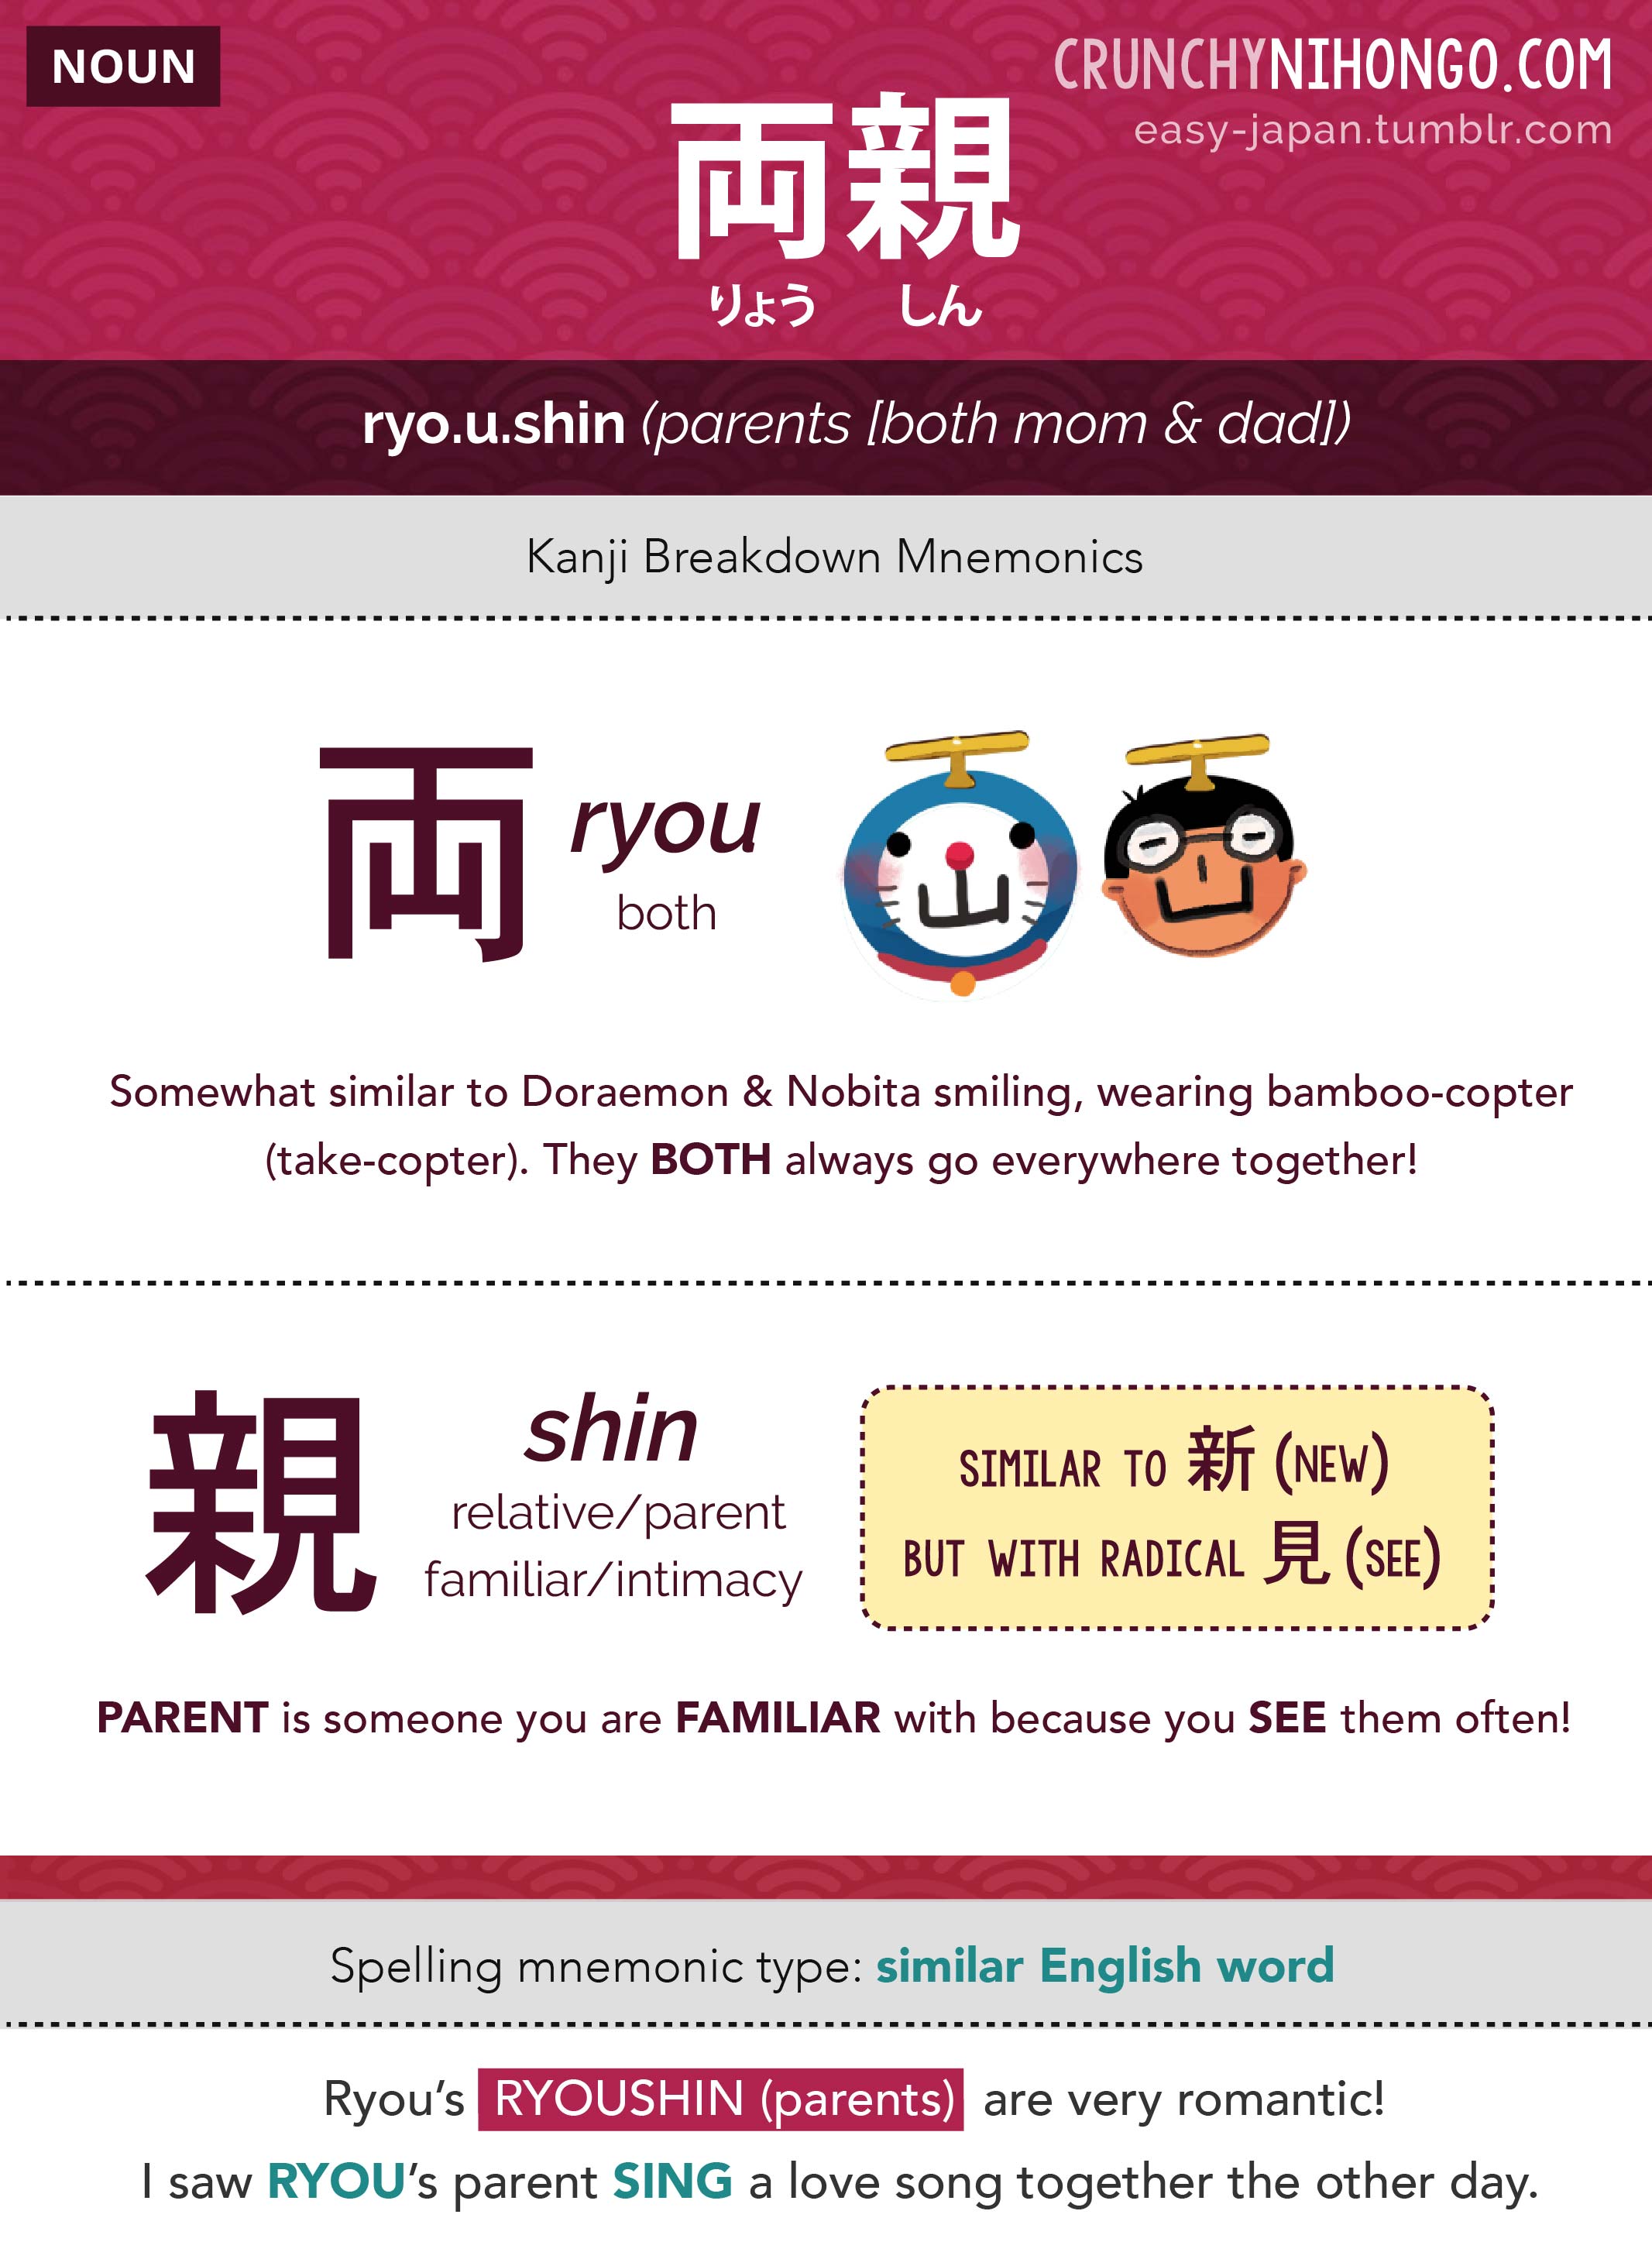 “n5-vocabulary-ryoushin-parent"